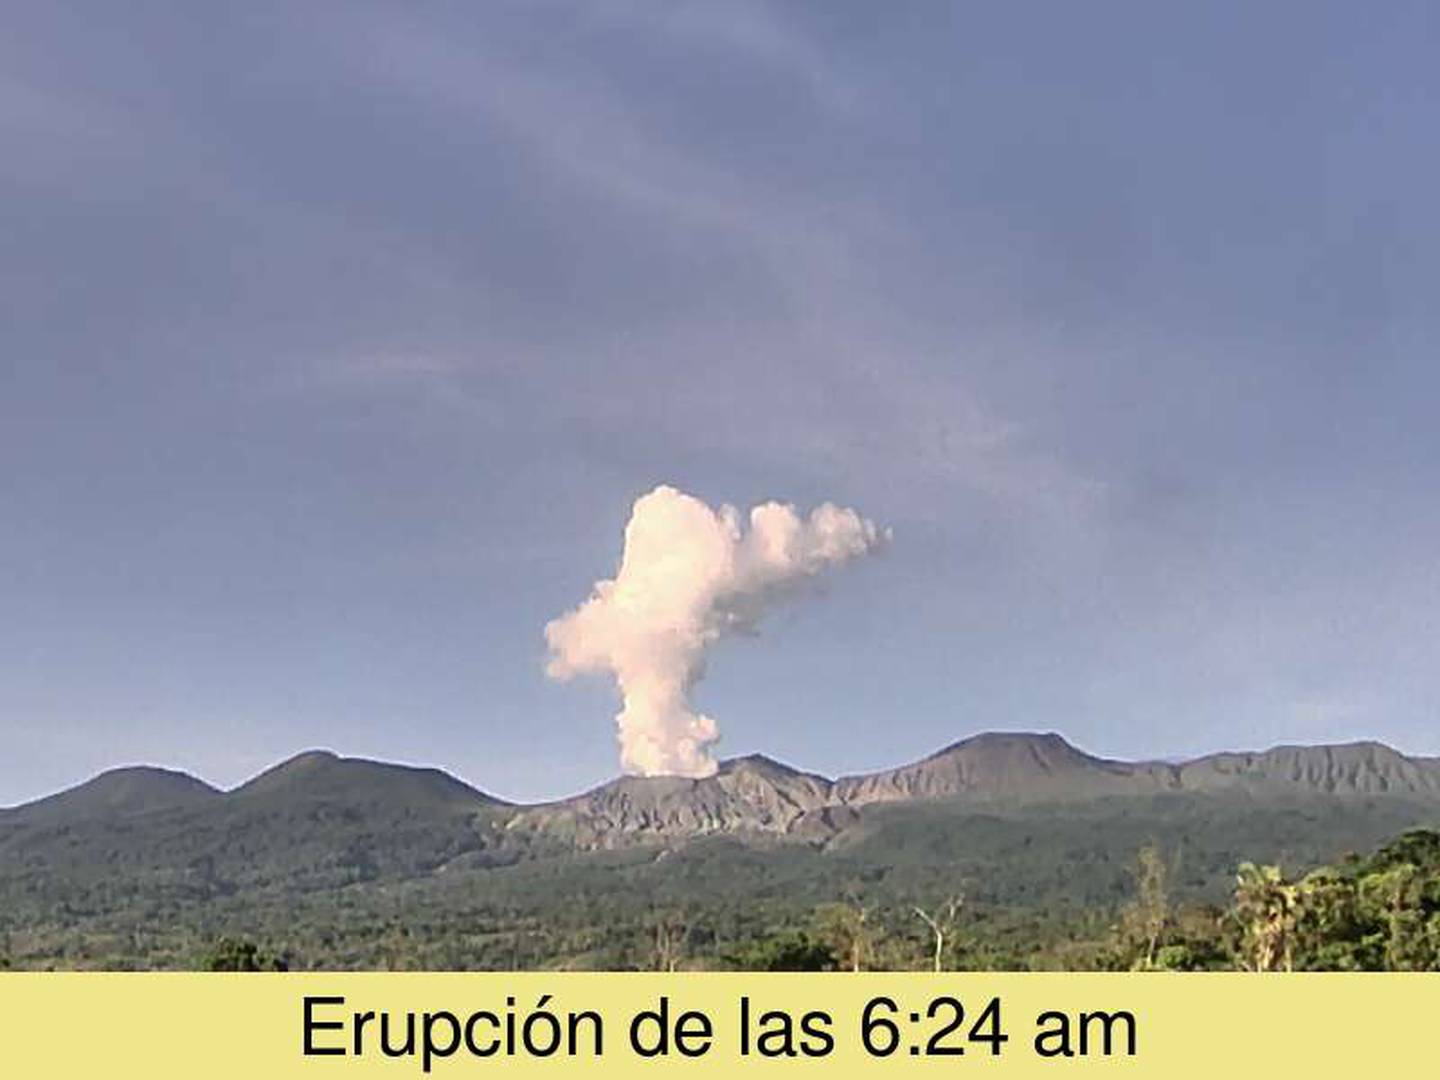 El viento calmo  permitió que la columna se gases se elevara  de forma vertical, Por lo despejado de esta mañana se pudo captar desde lejos la erupción del volcán Rincón de la Vieja. Foto: Ovsicori.